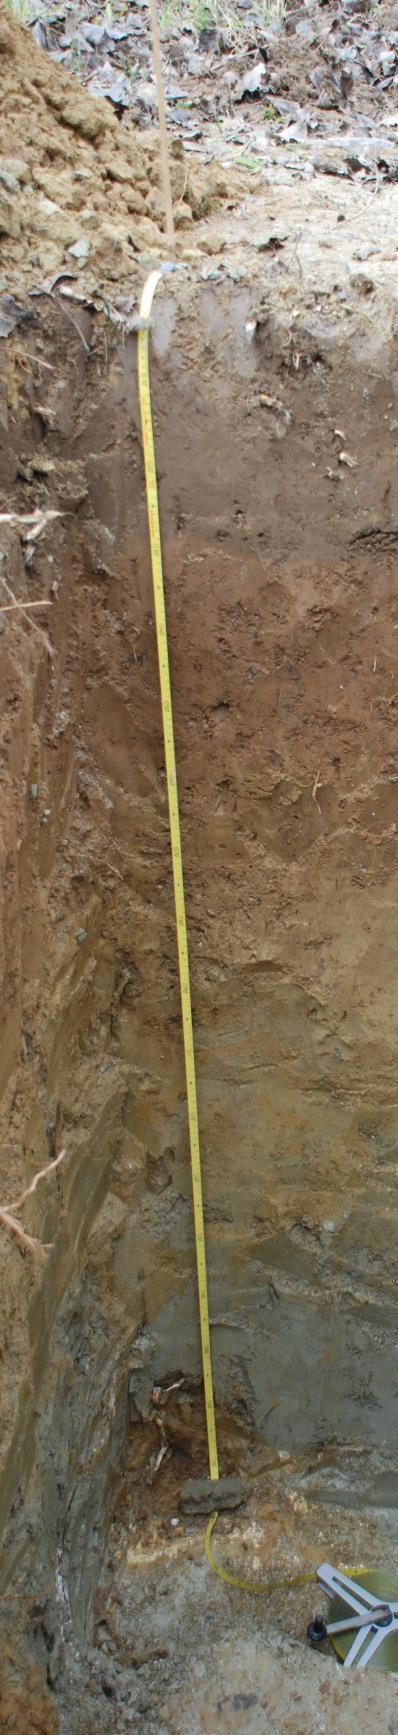 szerkezetű, víz- és tápanyagfelvételt nehezítő talajhibáktól mentes. Fontos további szempont, hogy a talajvíz 150-250 cm mélységben megtalálható legyen.